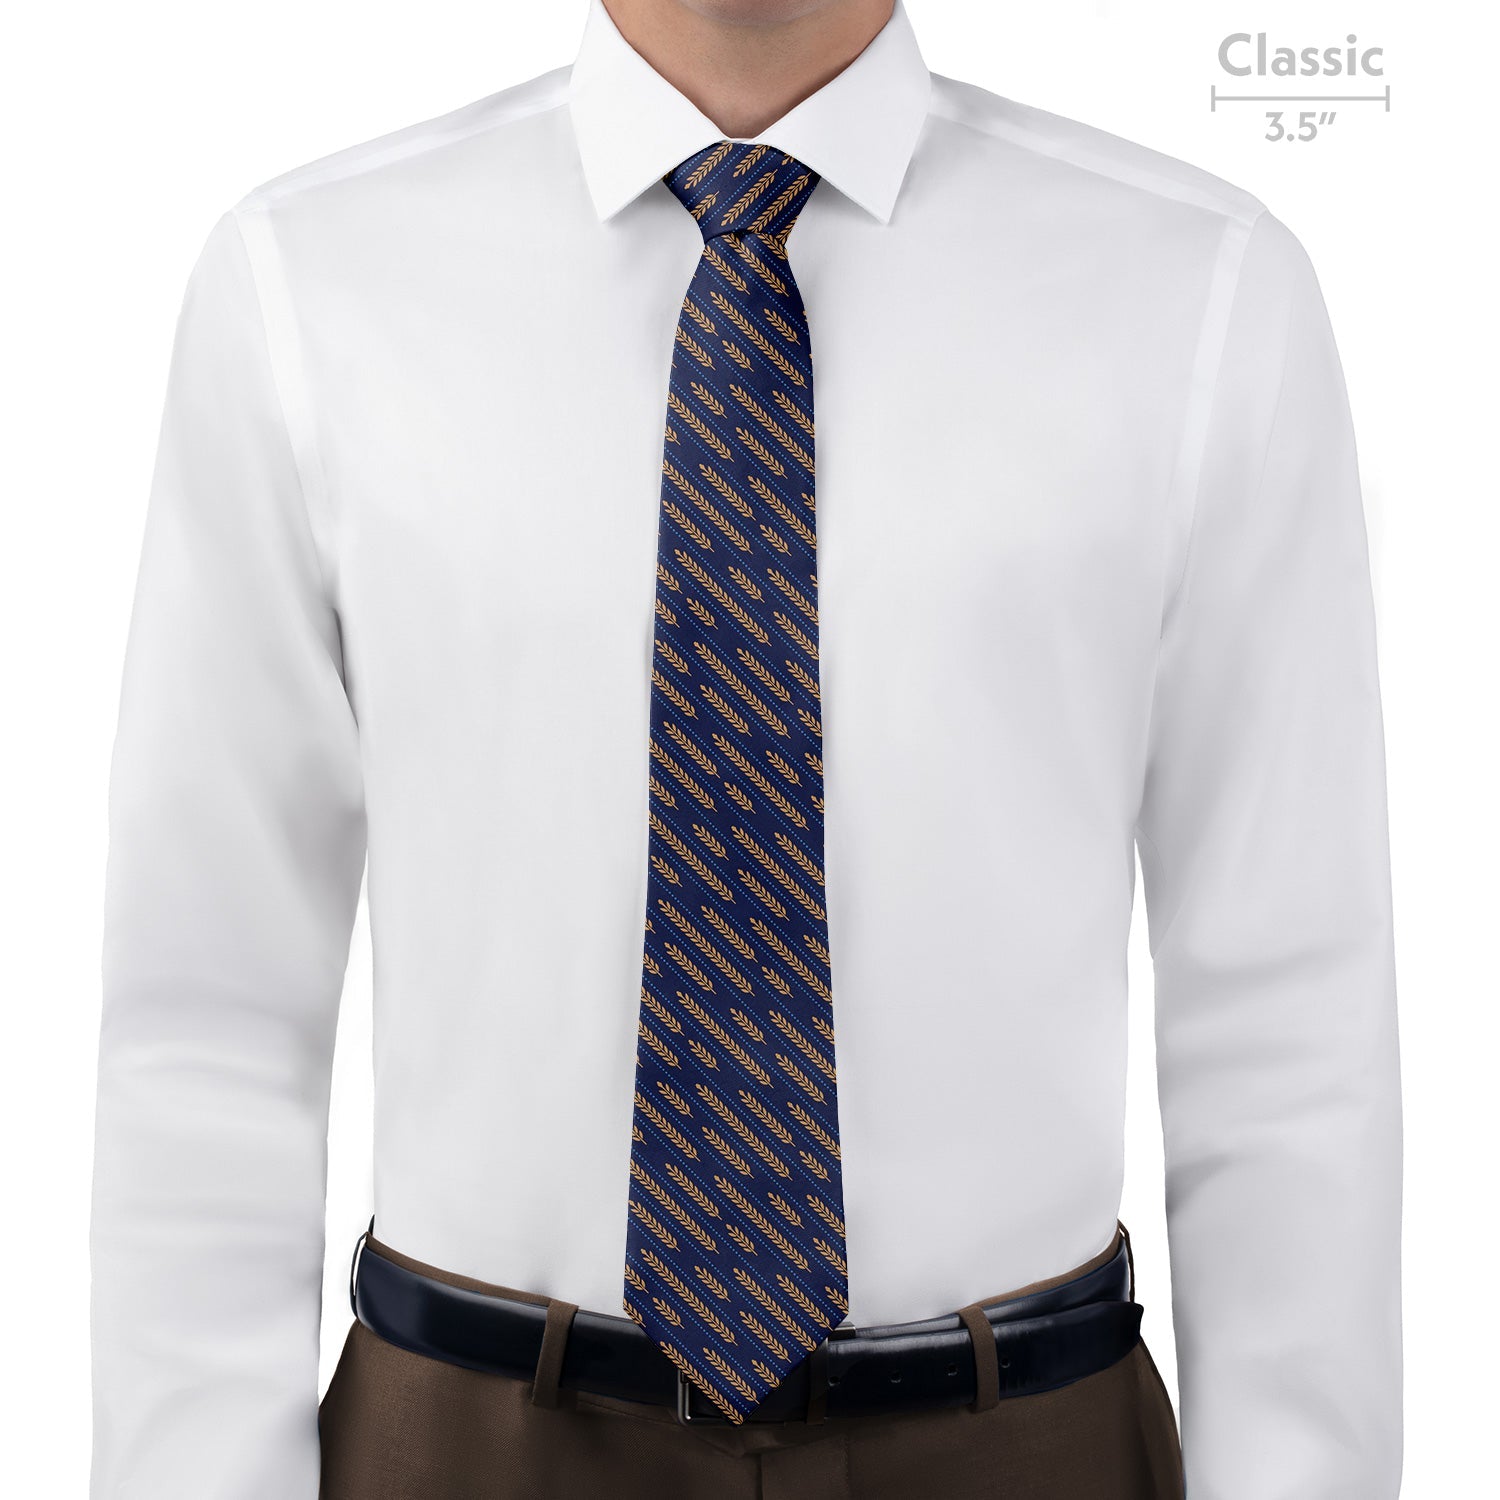 Wheat Necktie - Classic - Knotty Tie Co.